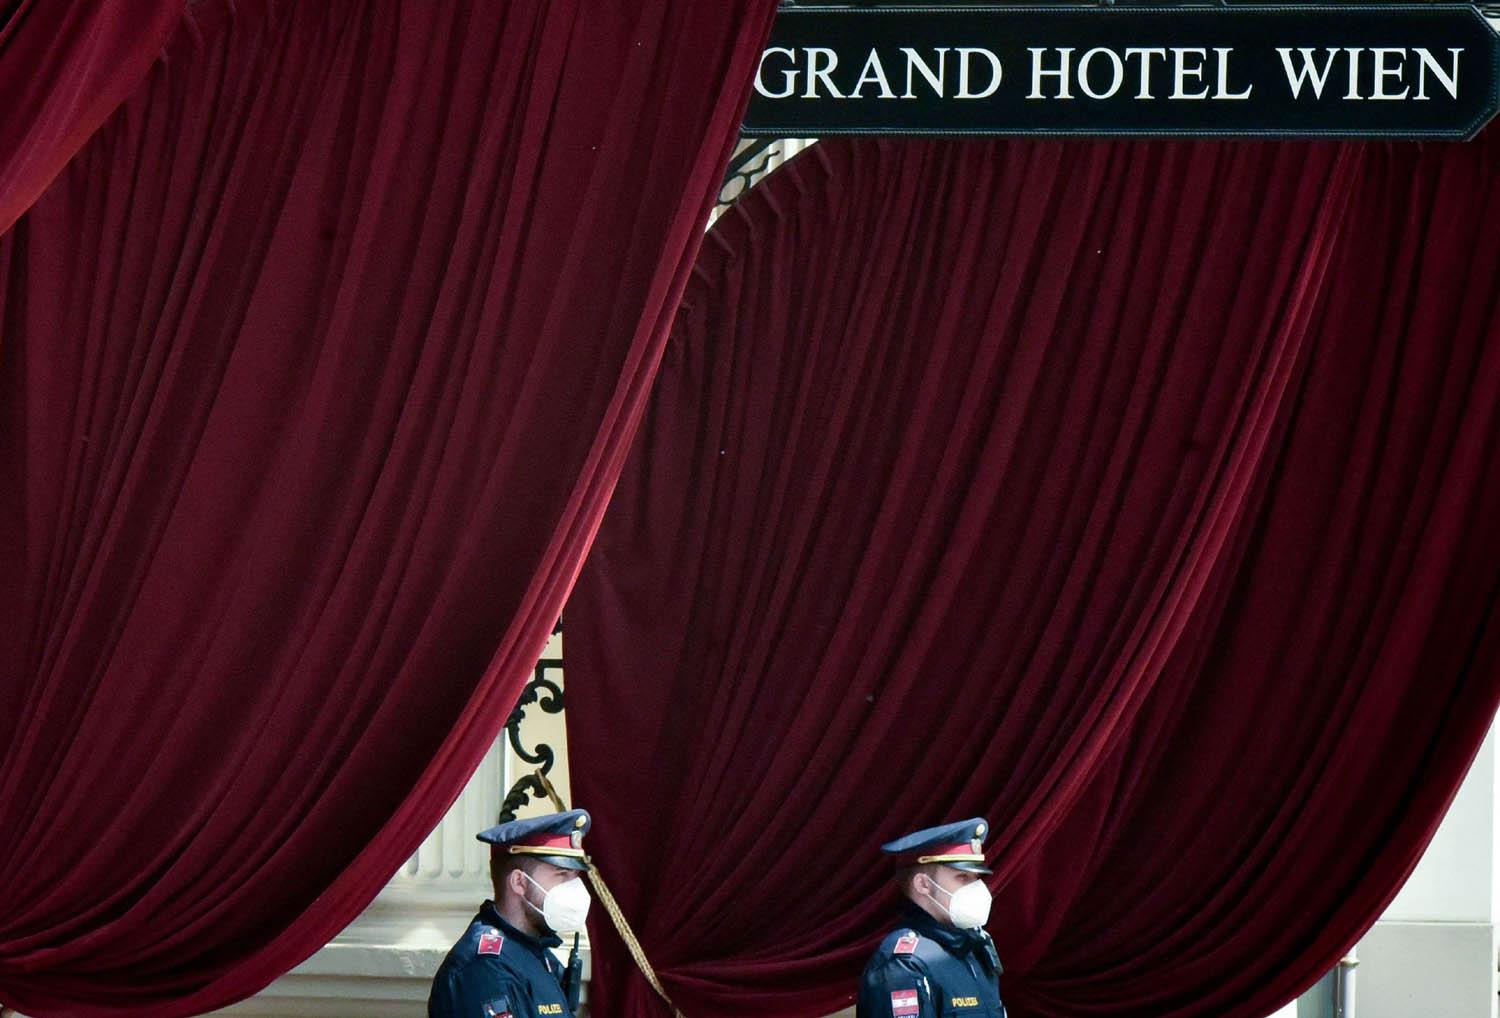 مدخل فندق غراند هوتيل في فيينا حيث تجري المفاوضات مع إيران